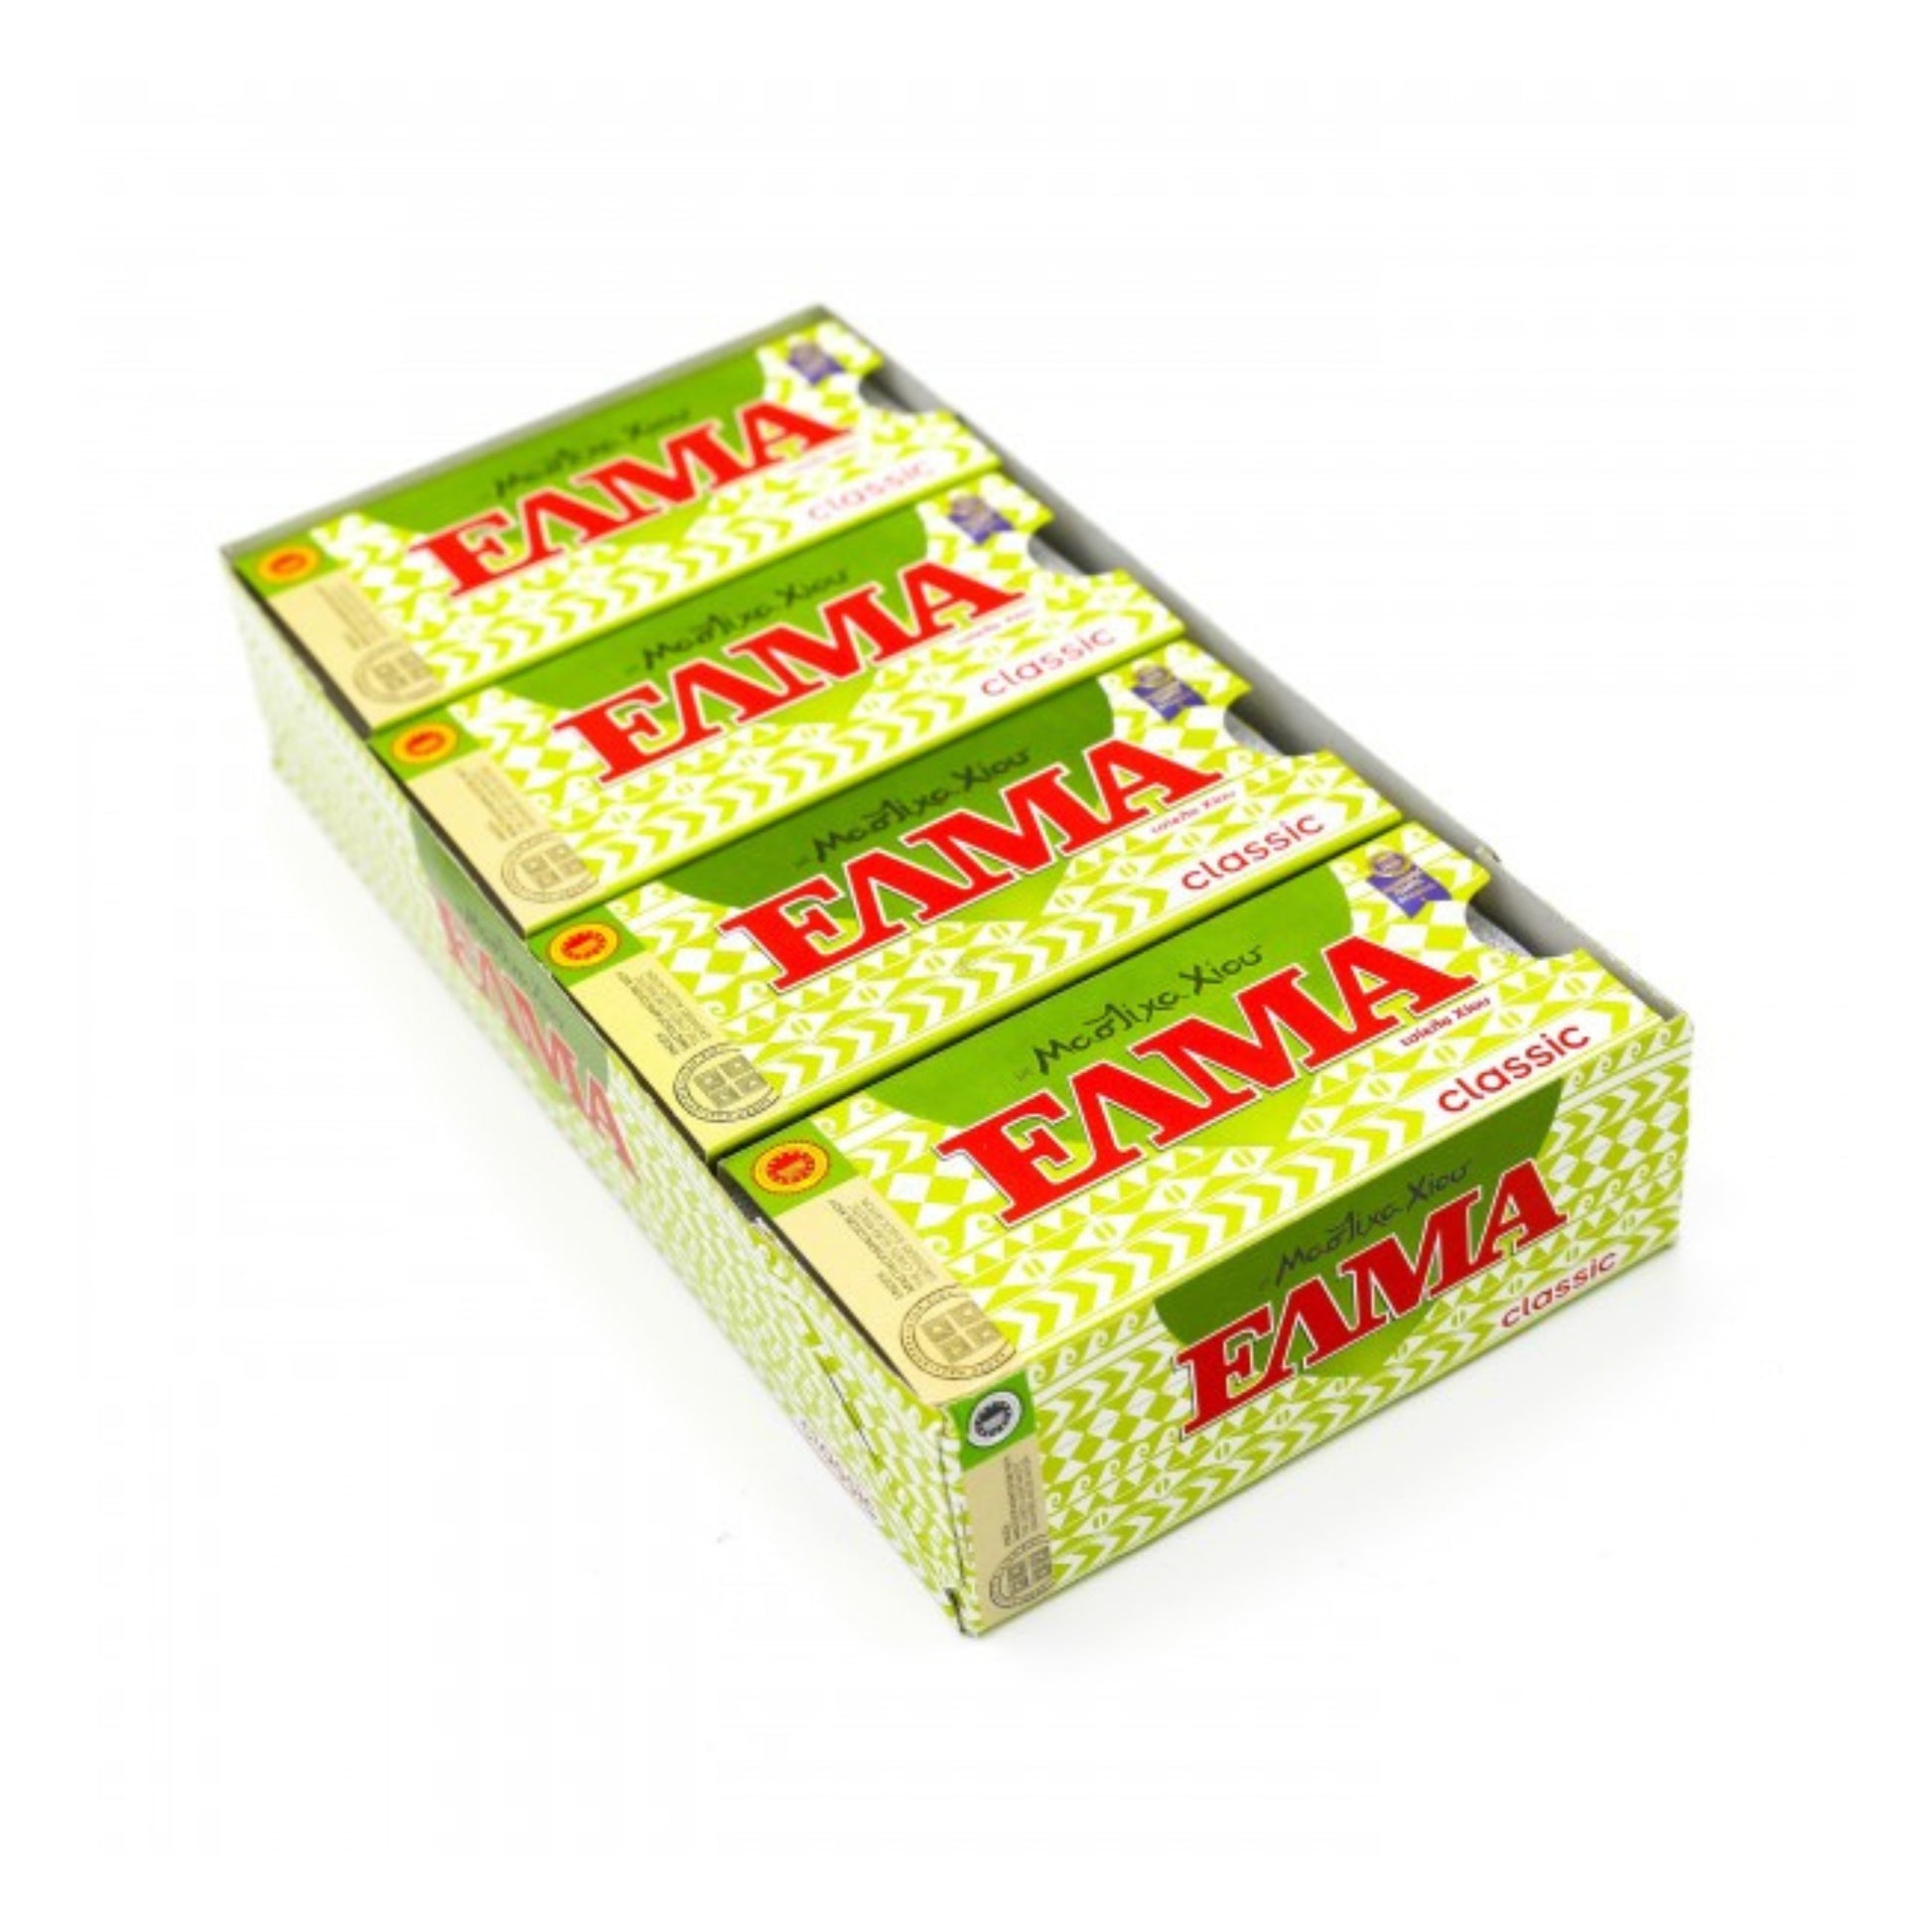 griechische-lebensmittel-griechische-produkte-mastix-kaugummi-classic-20x13g-elma